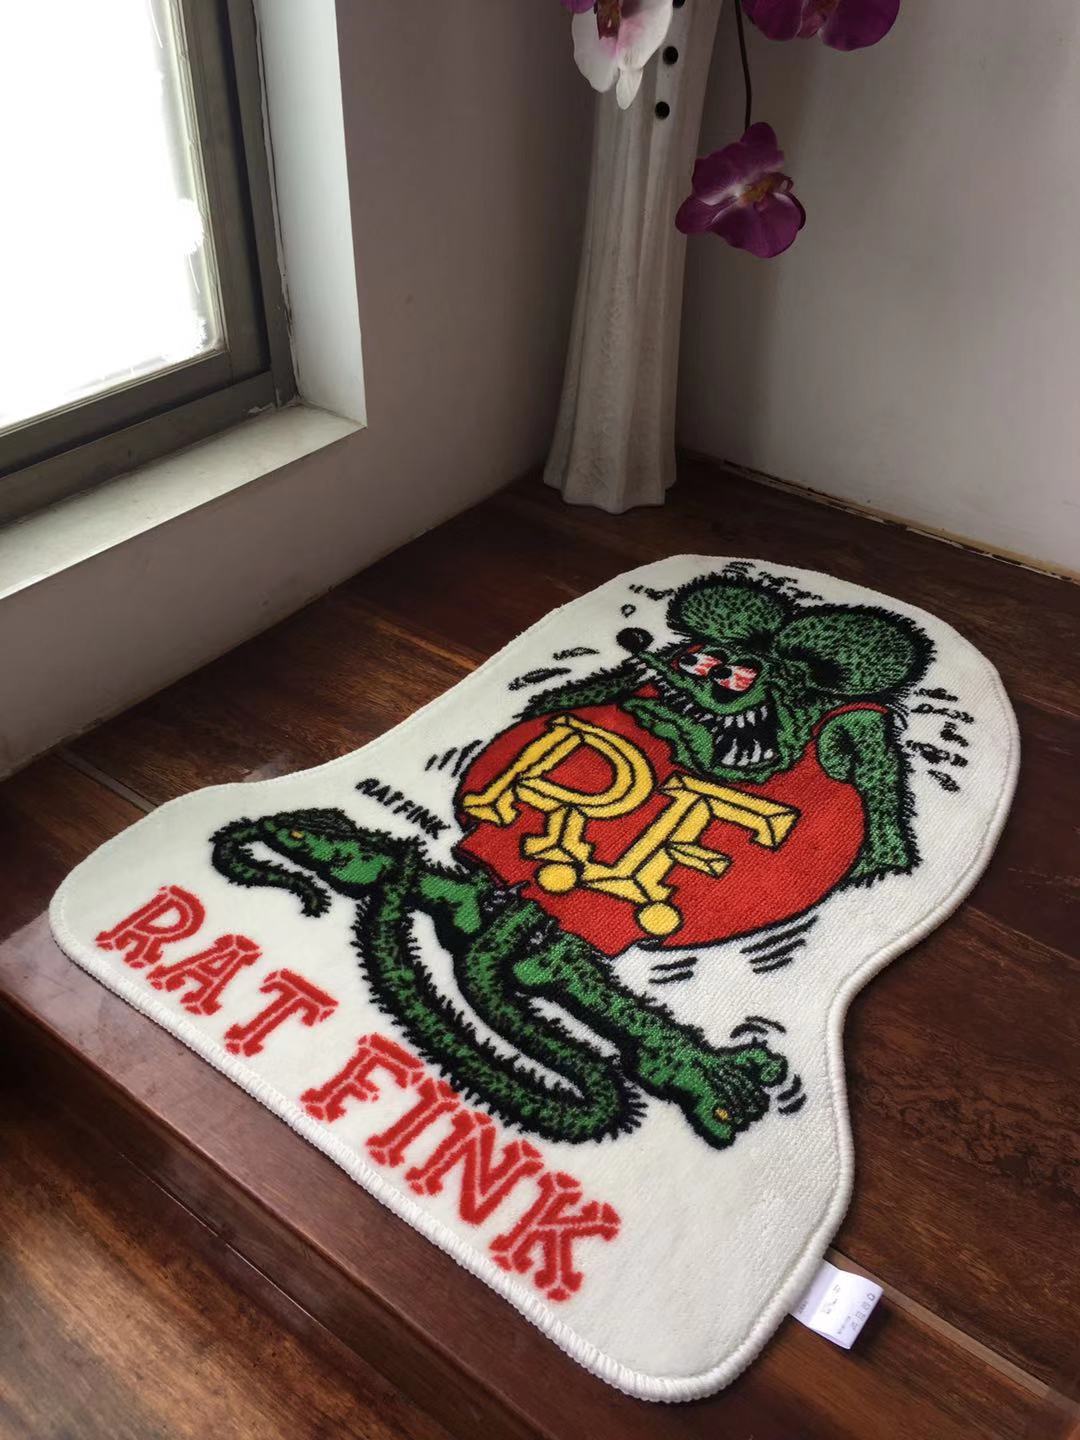 Personalized Rat Fink Hot Rod Garage Welcome Door Mat Heaven Rug Christmas  Gift